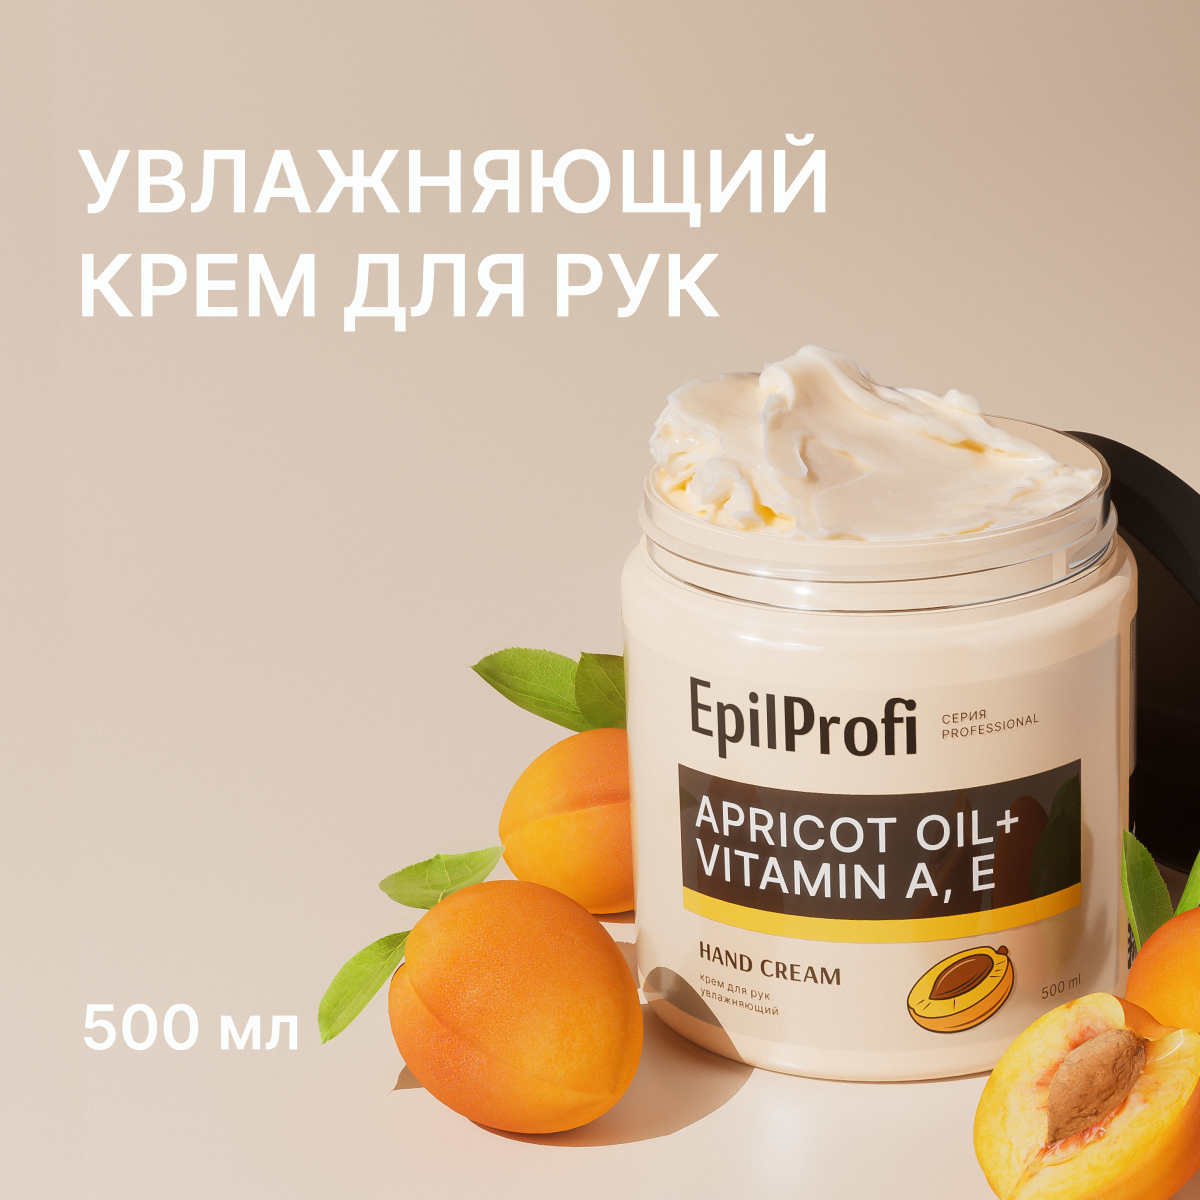 Epilprofi / Крем для рук увлажняющий. Интенсивного действия с маслом абрикосовых косточек и витаминами, 500 мл